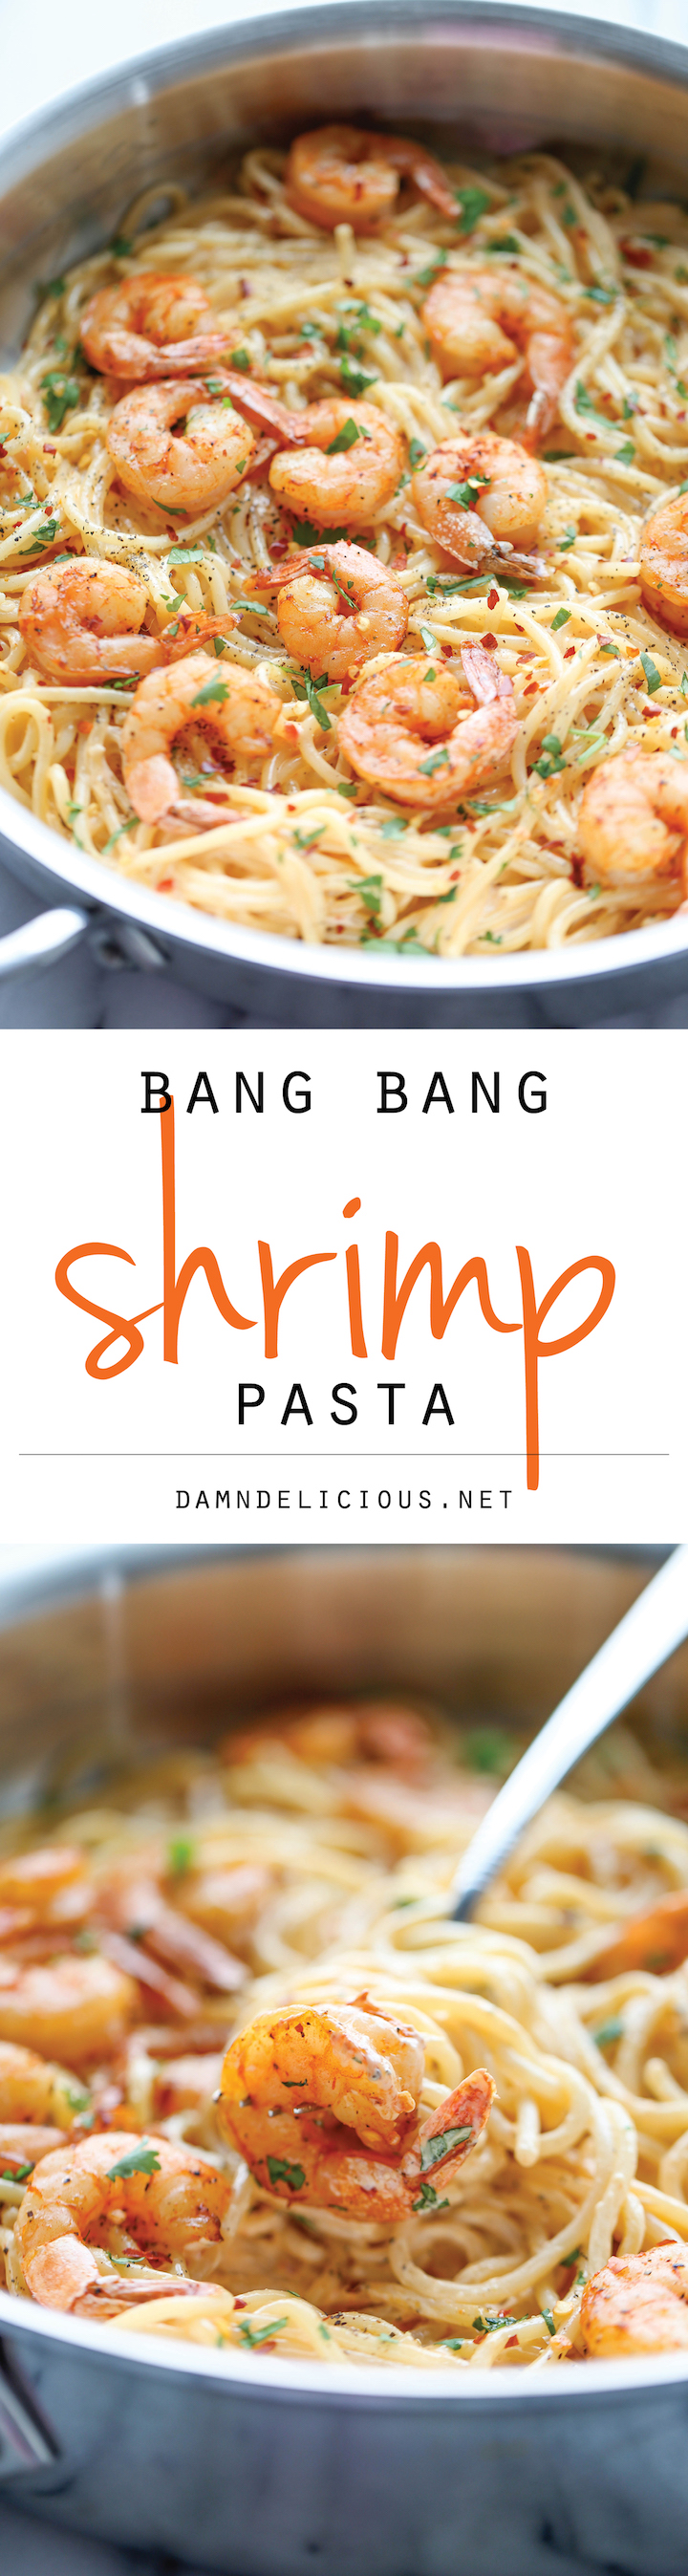 Bang Bang Shrimp Pasta - Damn Delicious